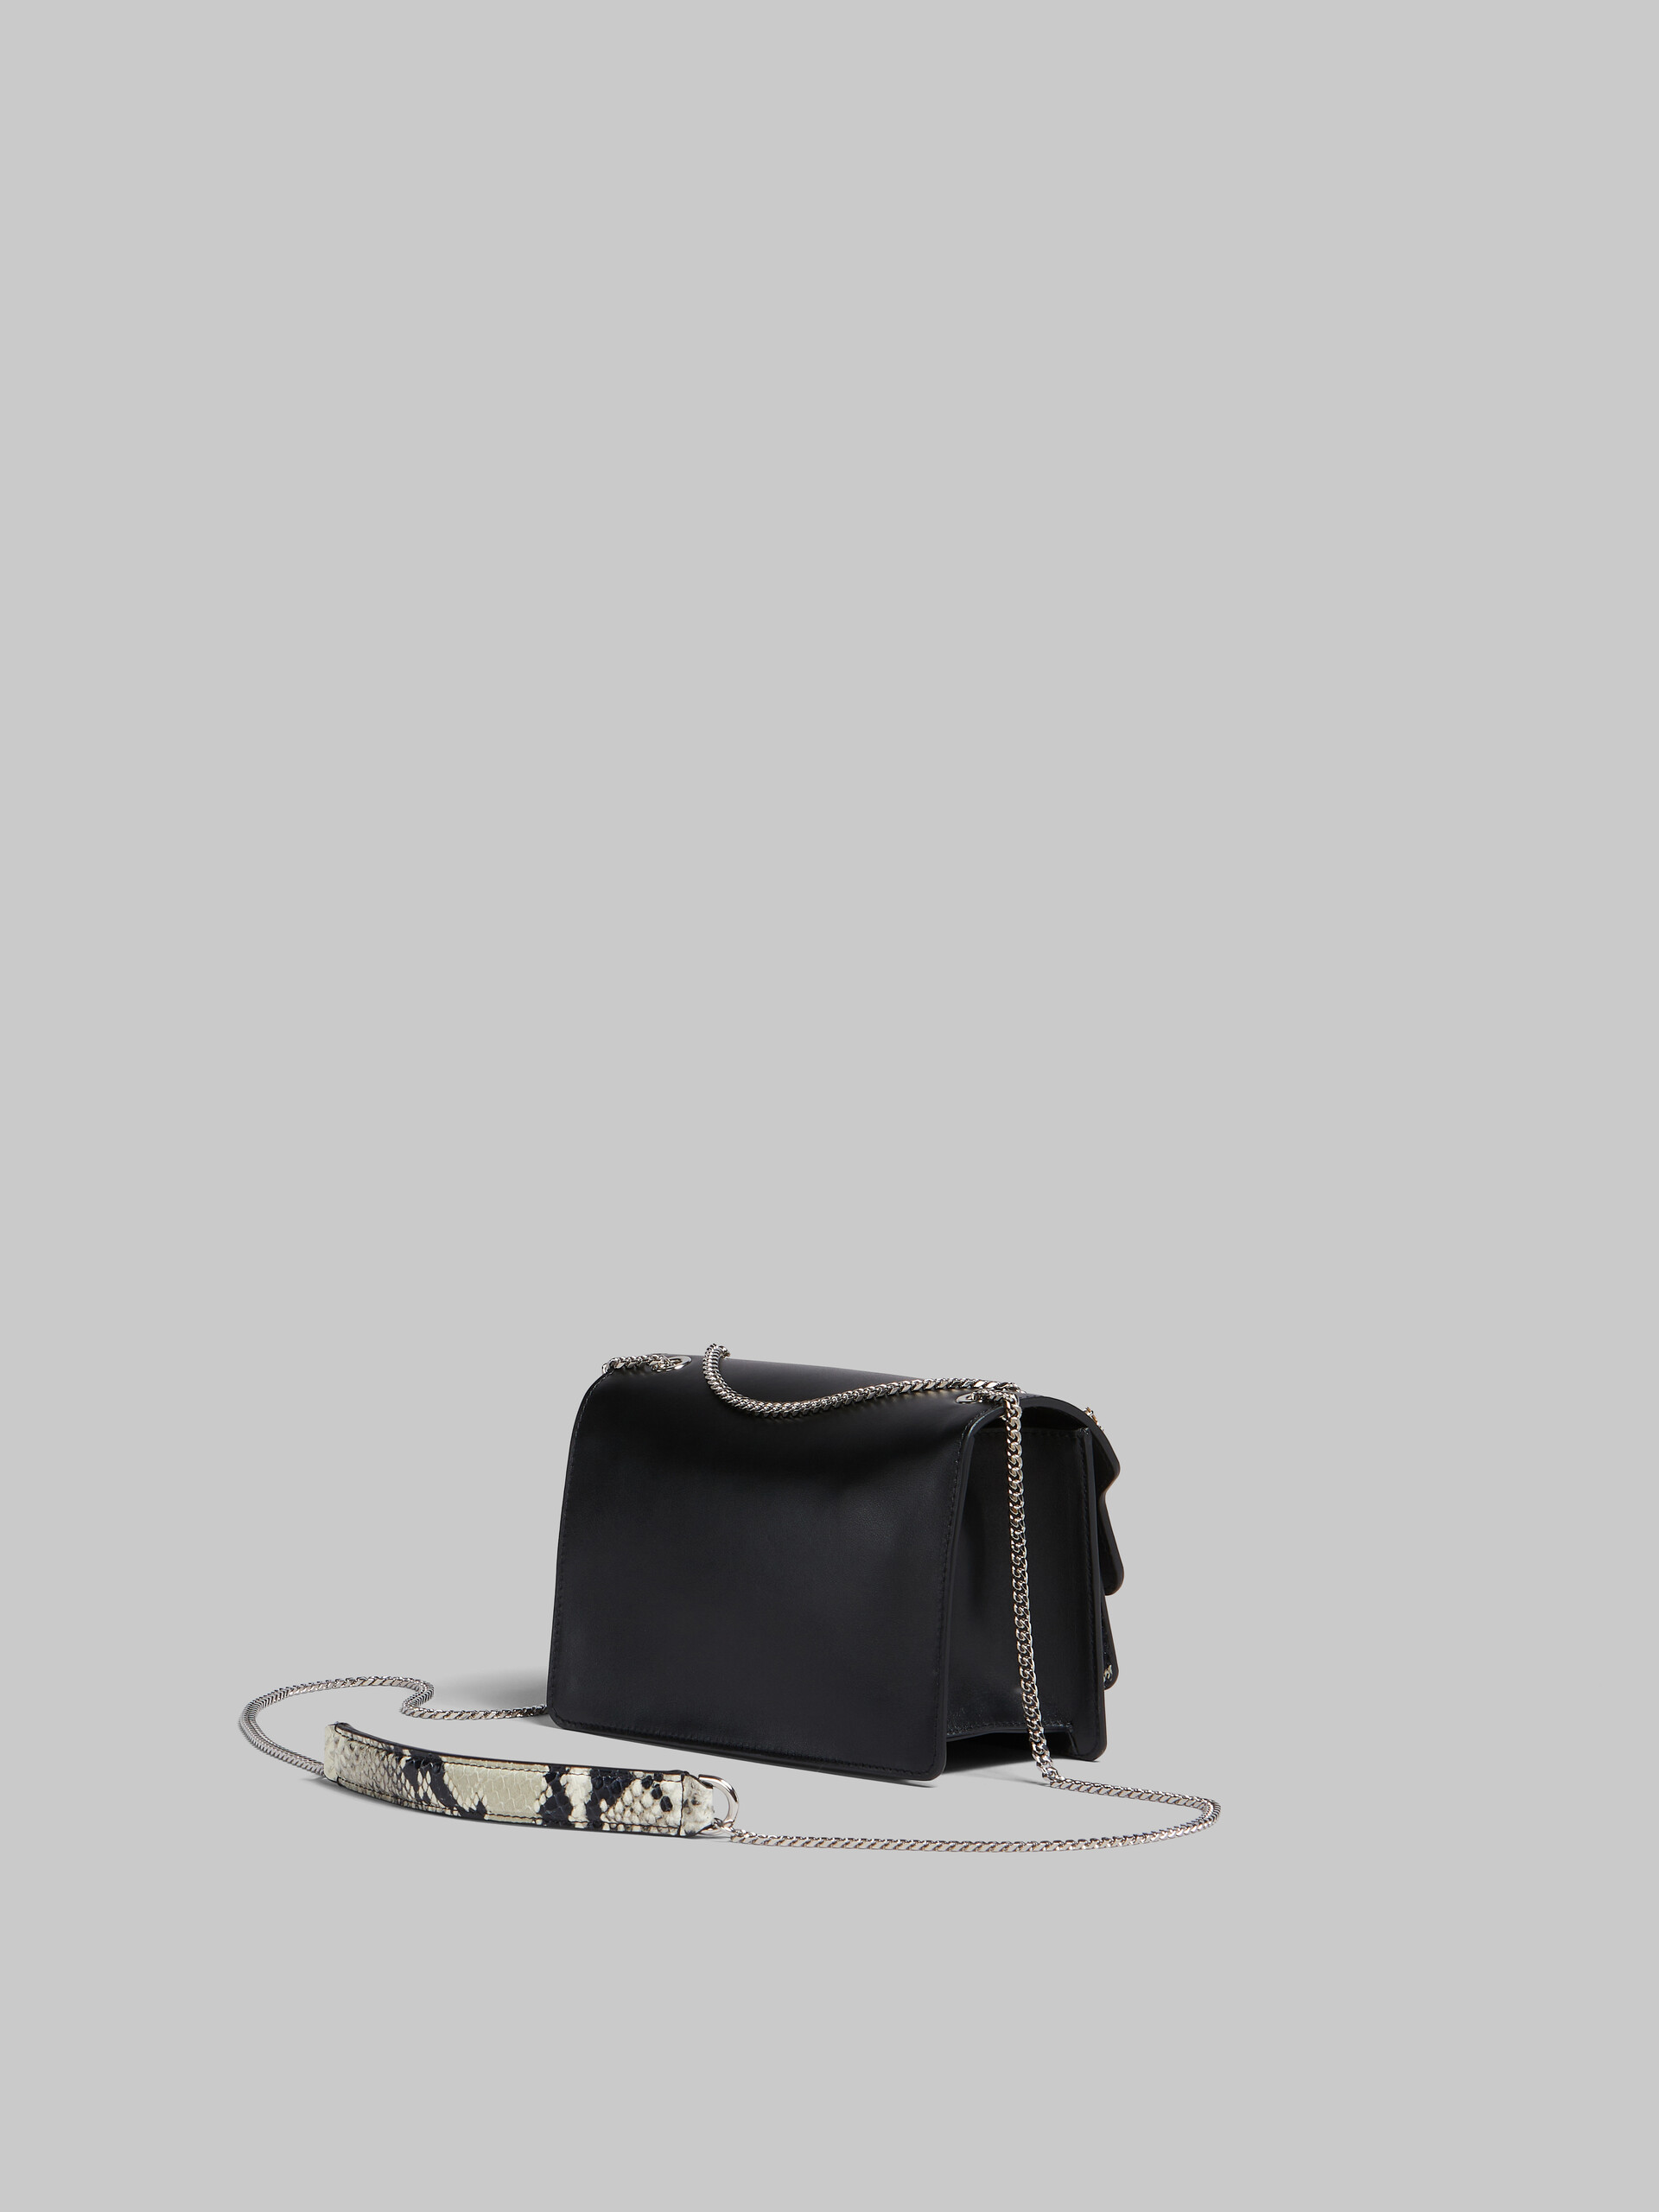 Black white and python-print leather medium Trunk Slim bag - Shoulder Bag - Image 3